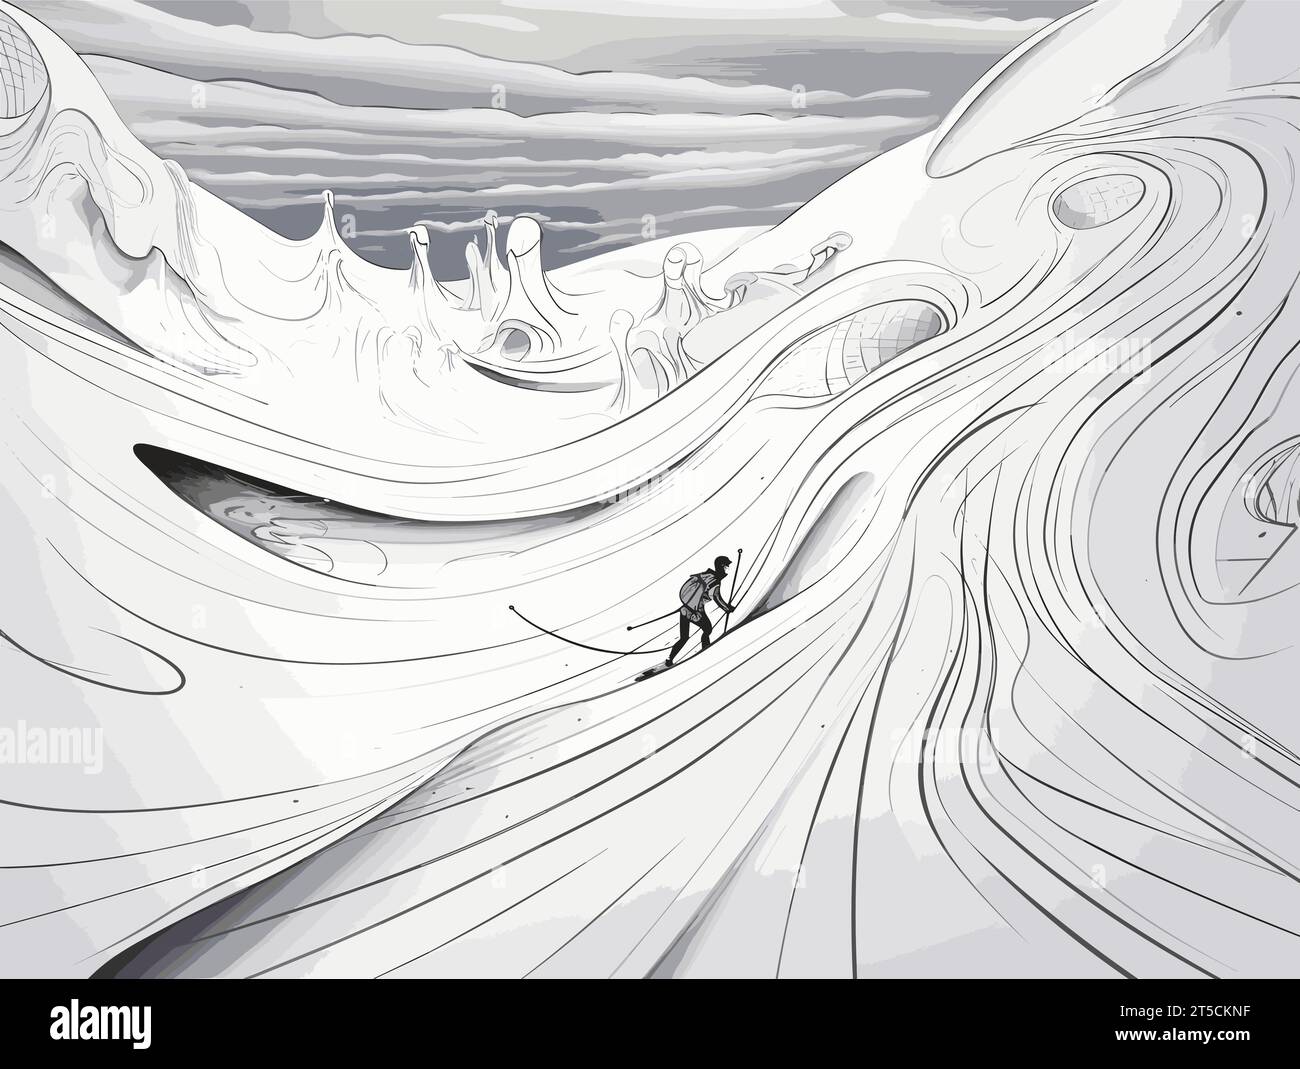 Dibujo de vacaciones en la ilustración de nieve separada, barriendo líneas sobredibujadas. Ilustración del Vector